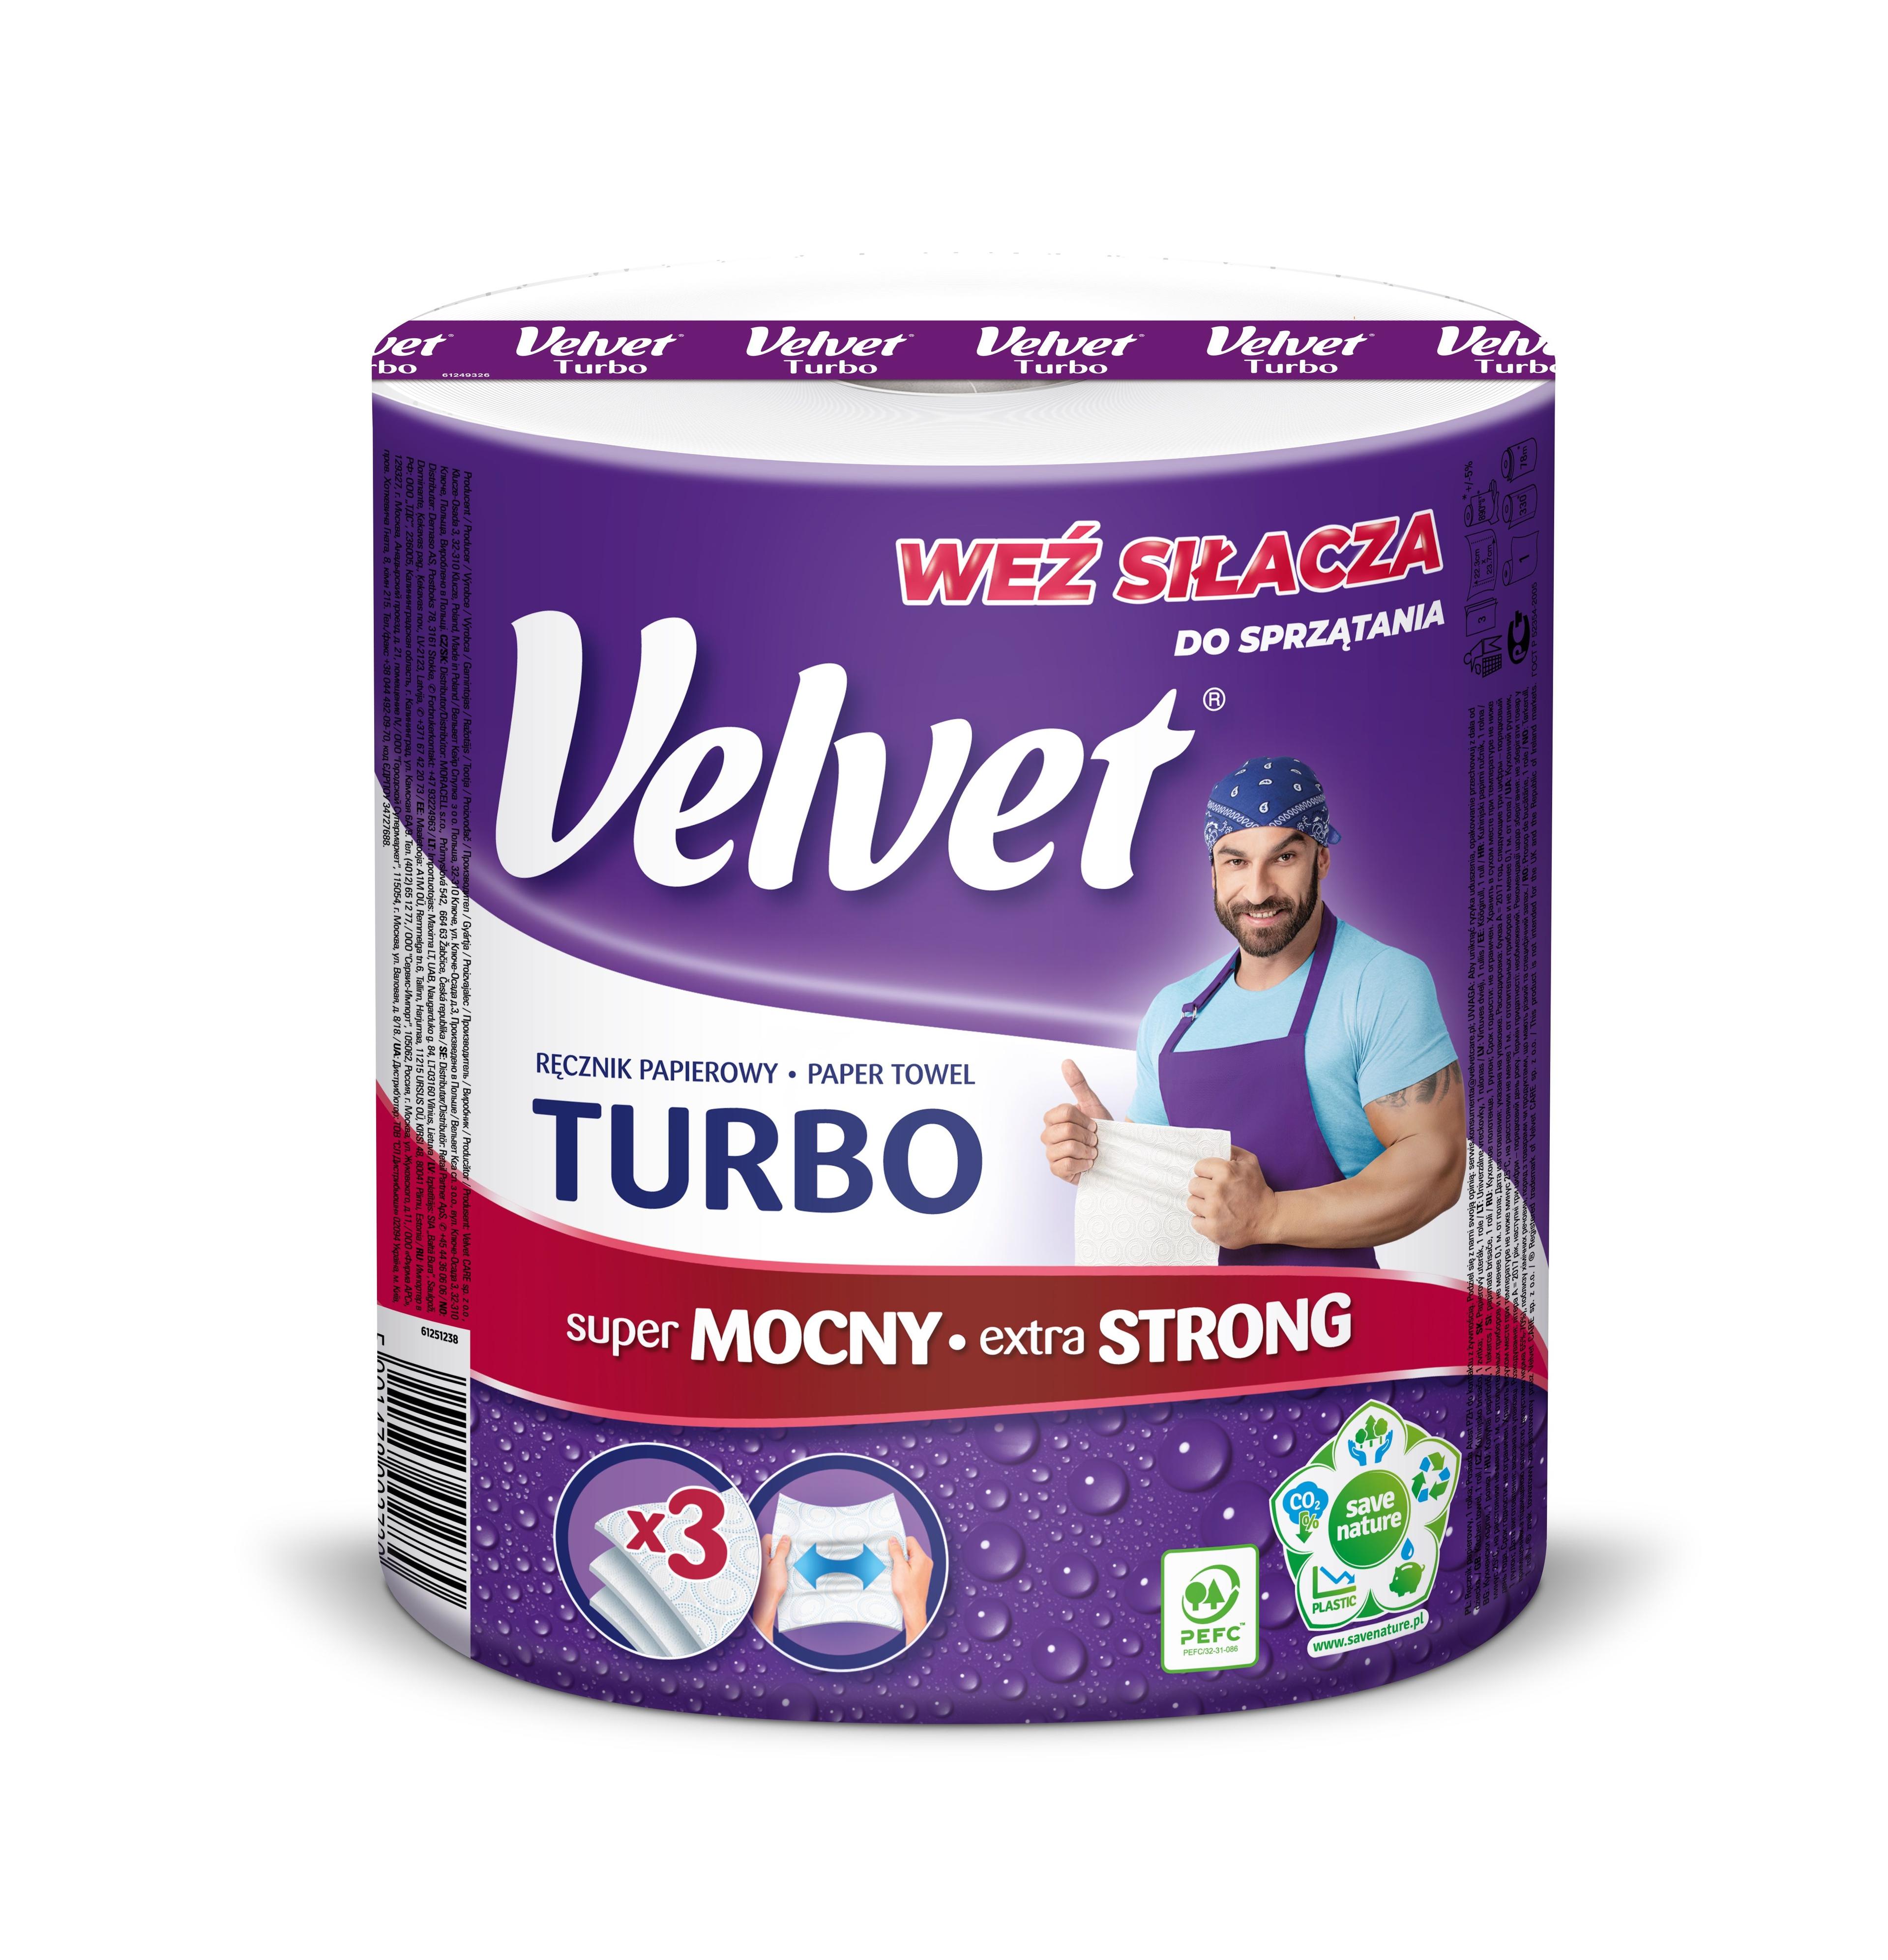 Paper towel Turbo Velvet